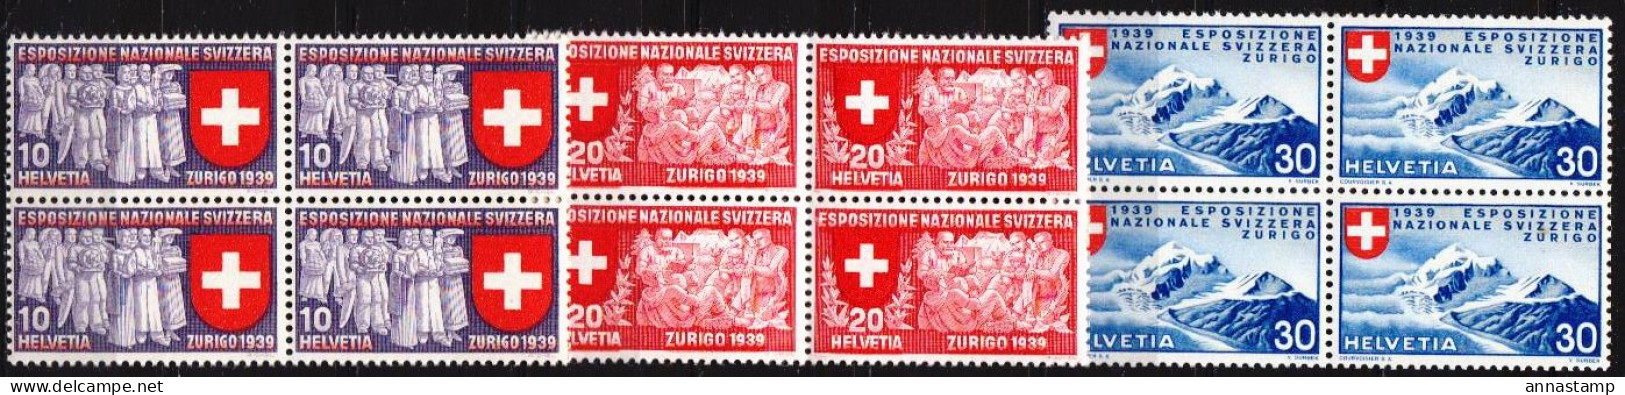 Switzerland MNH Set In Blocks Of 4 Stamps, Italian Inscription - Esposizioni Filateliche